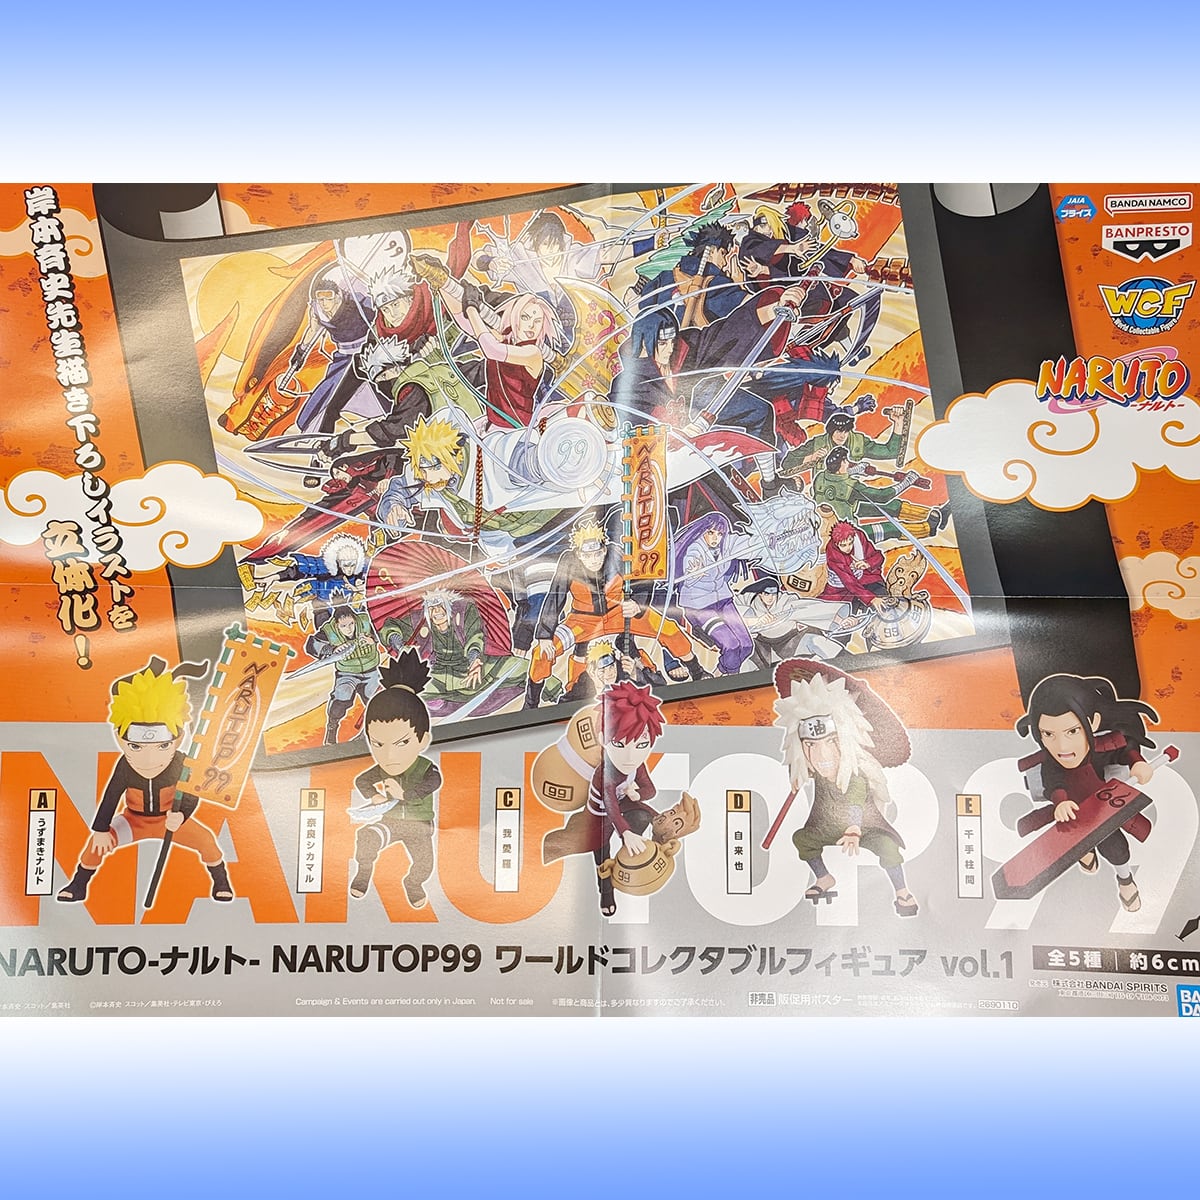 直接買 NARUTO ワーコレ NARUTOP99 vol.1 - フィギュア